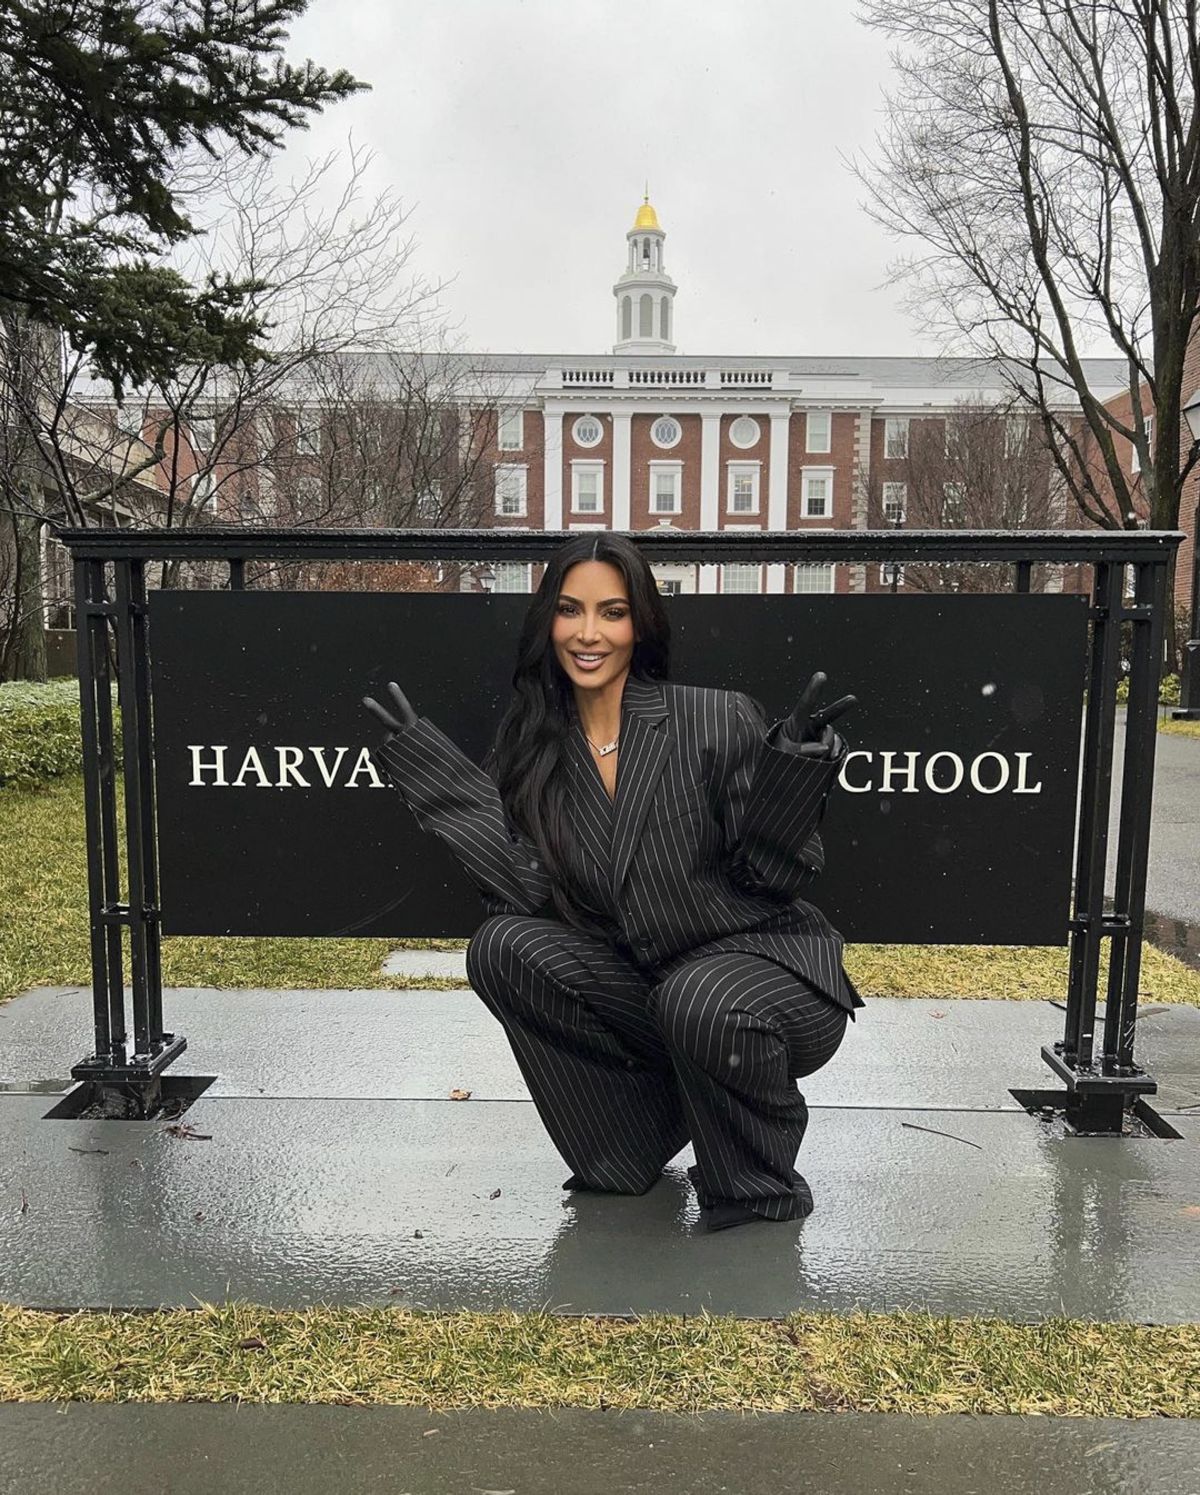 "Не умничай": Ким Кардашьян высмеяли за выступление в Гарвардской бизнес-школе